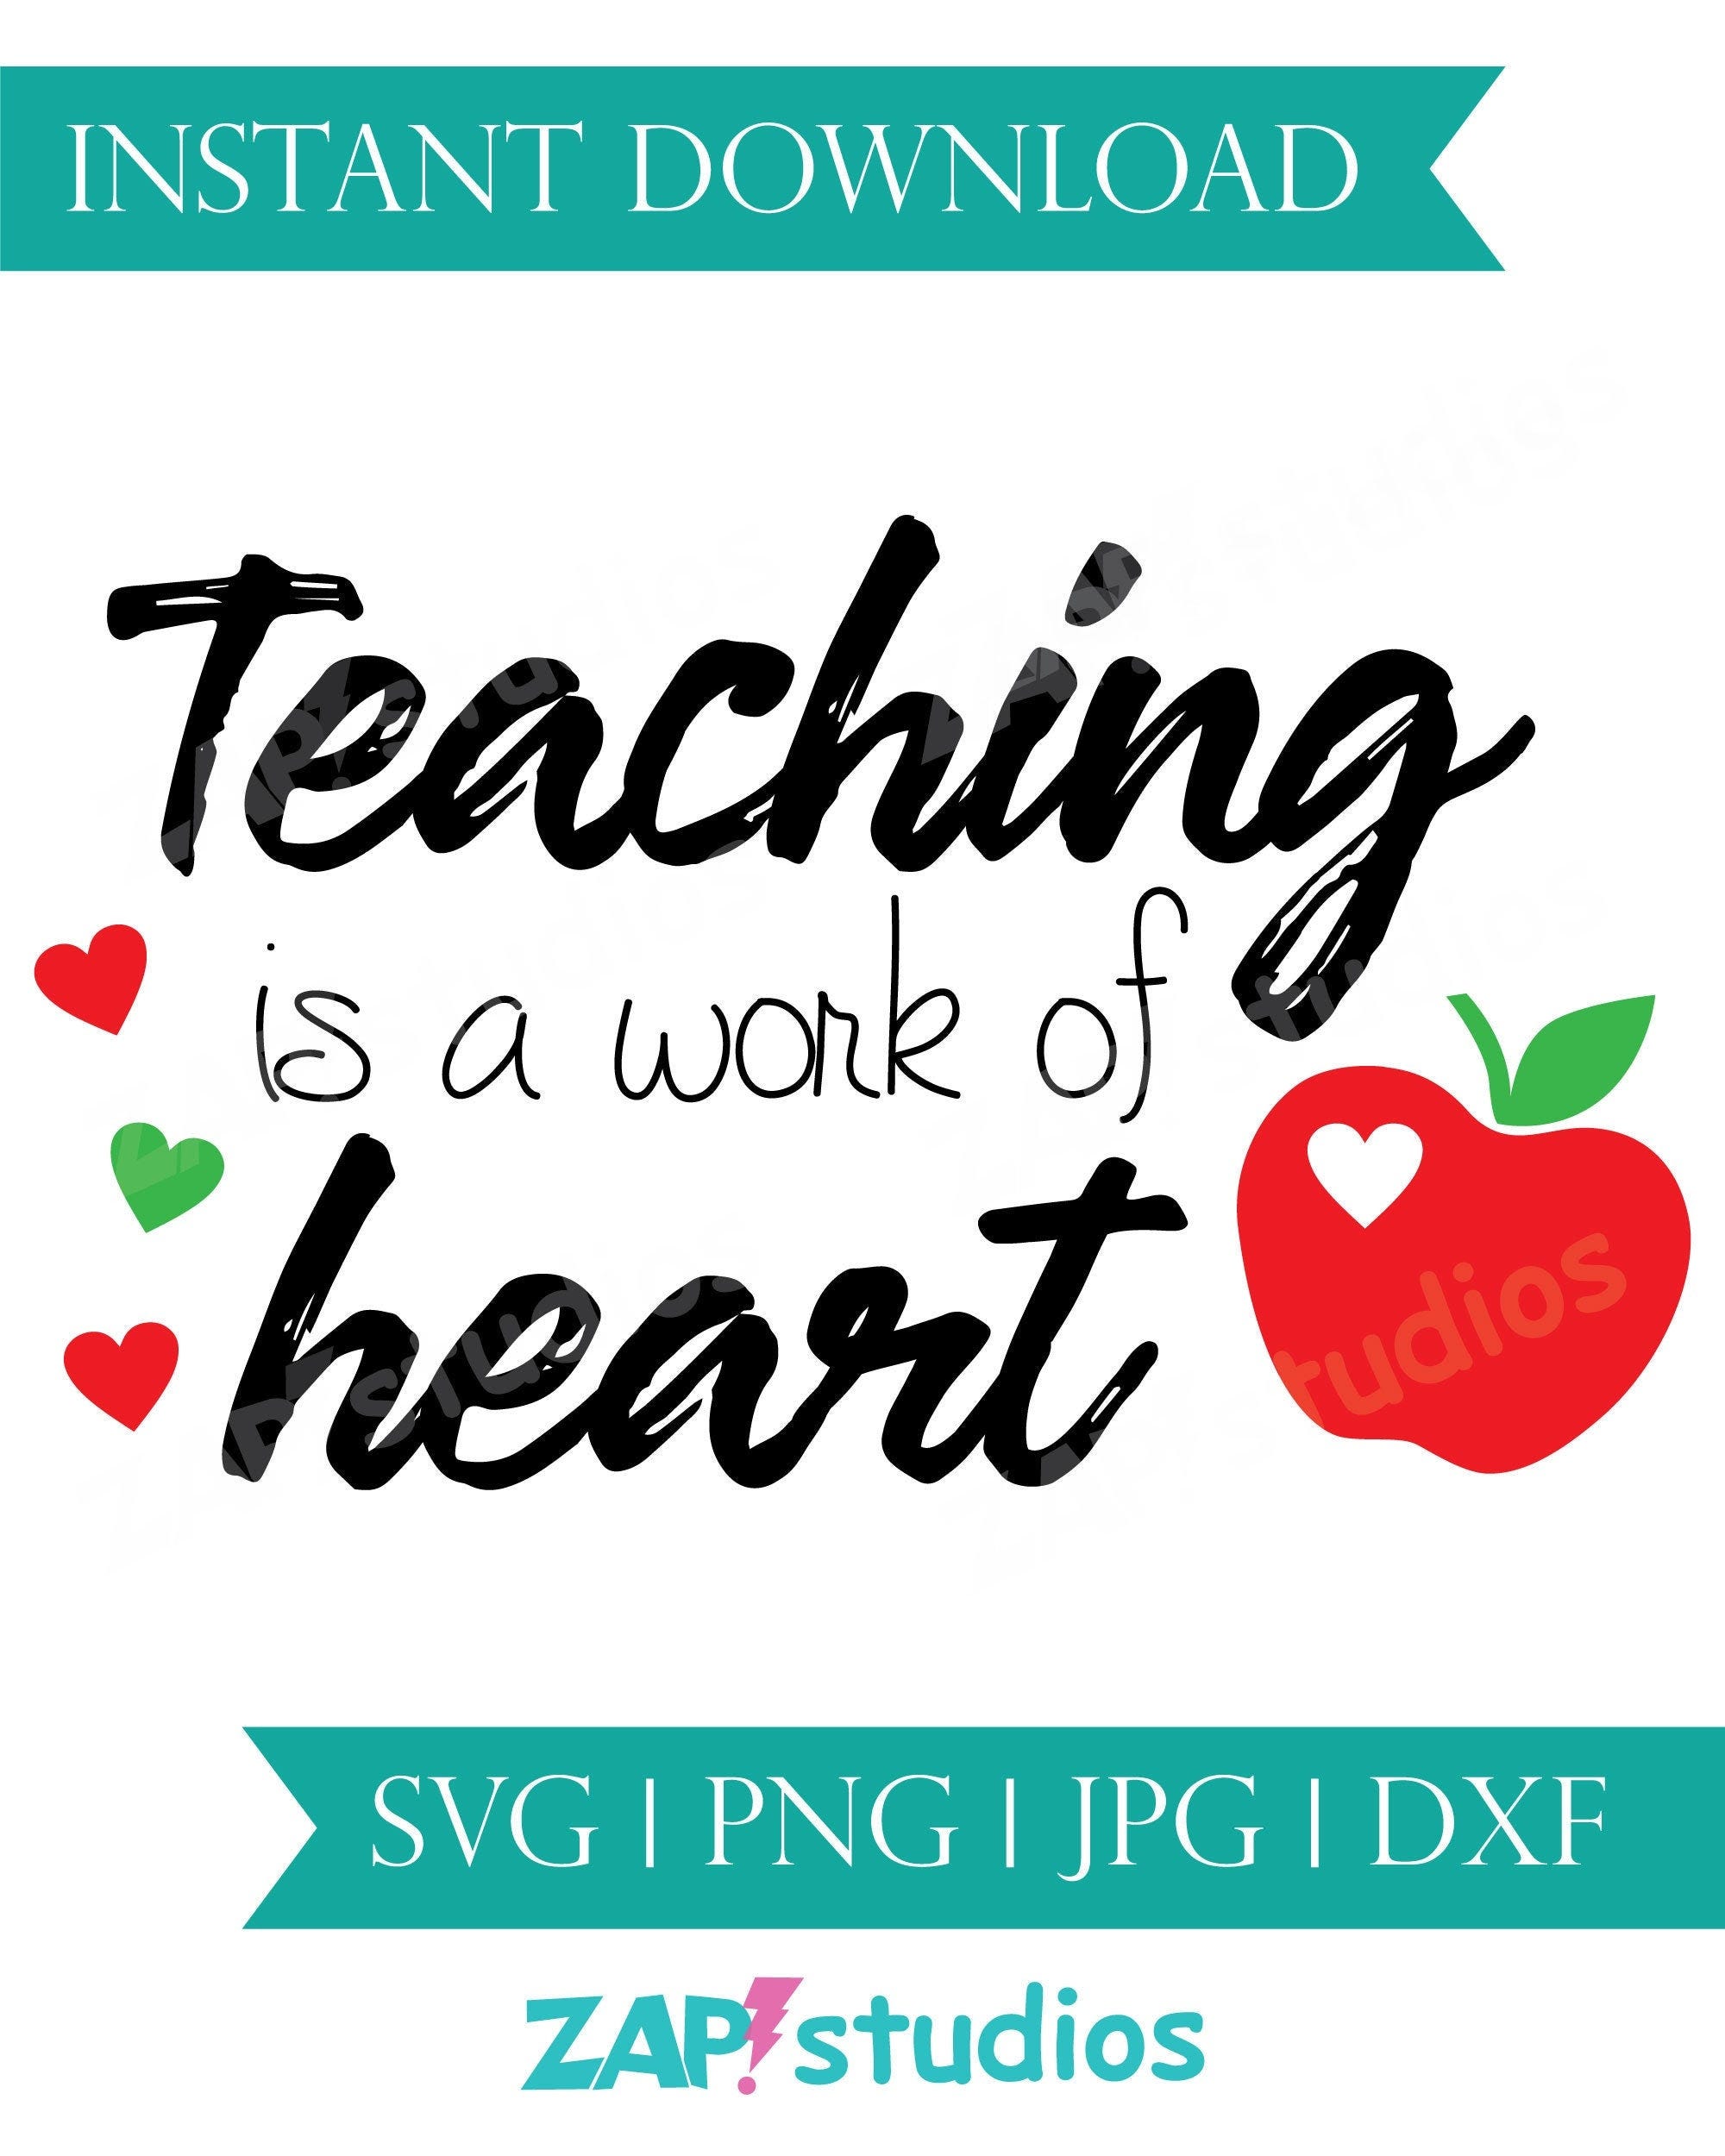 Teaching is a work of heart svg, teacher gifts, teacher appreciation, apple, teacher day svg, teacher day gifts, teacher png sublimation